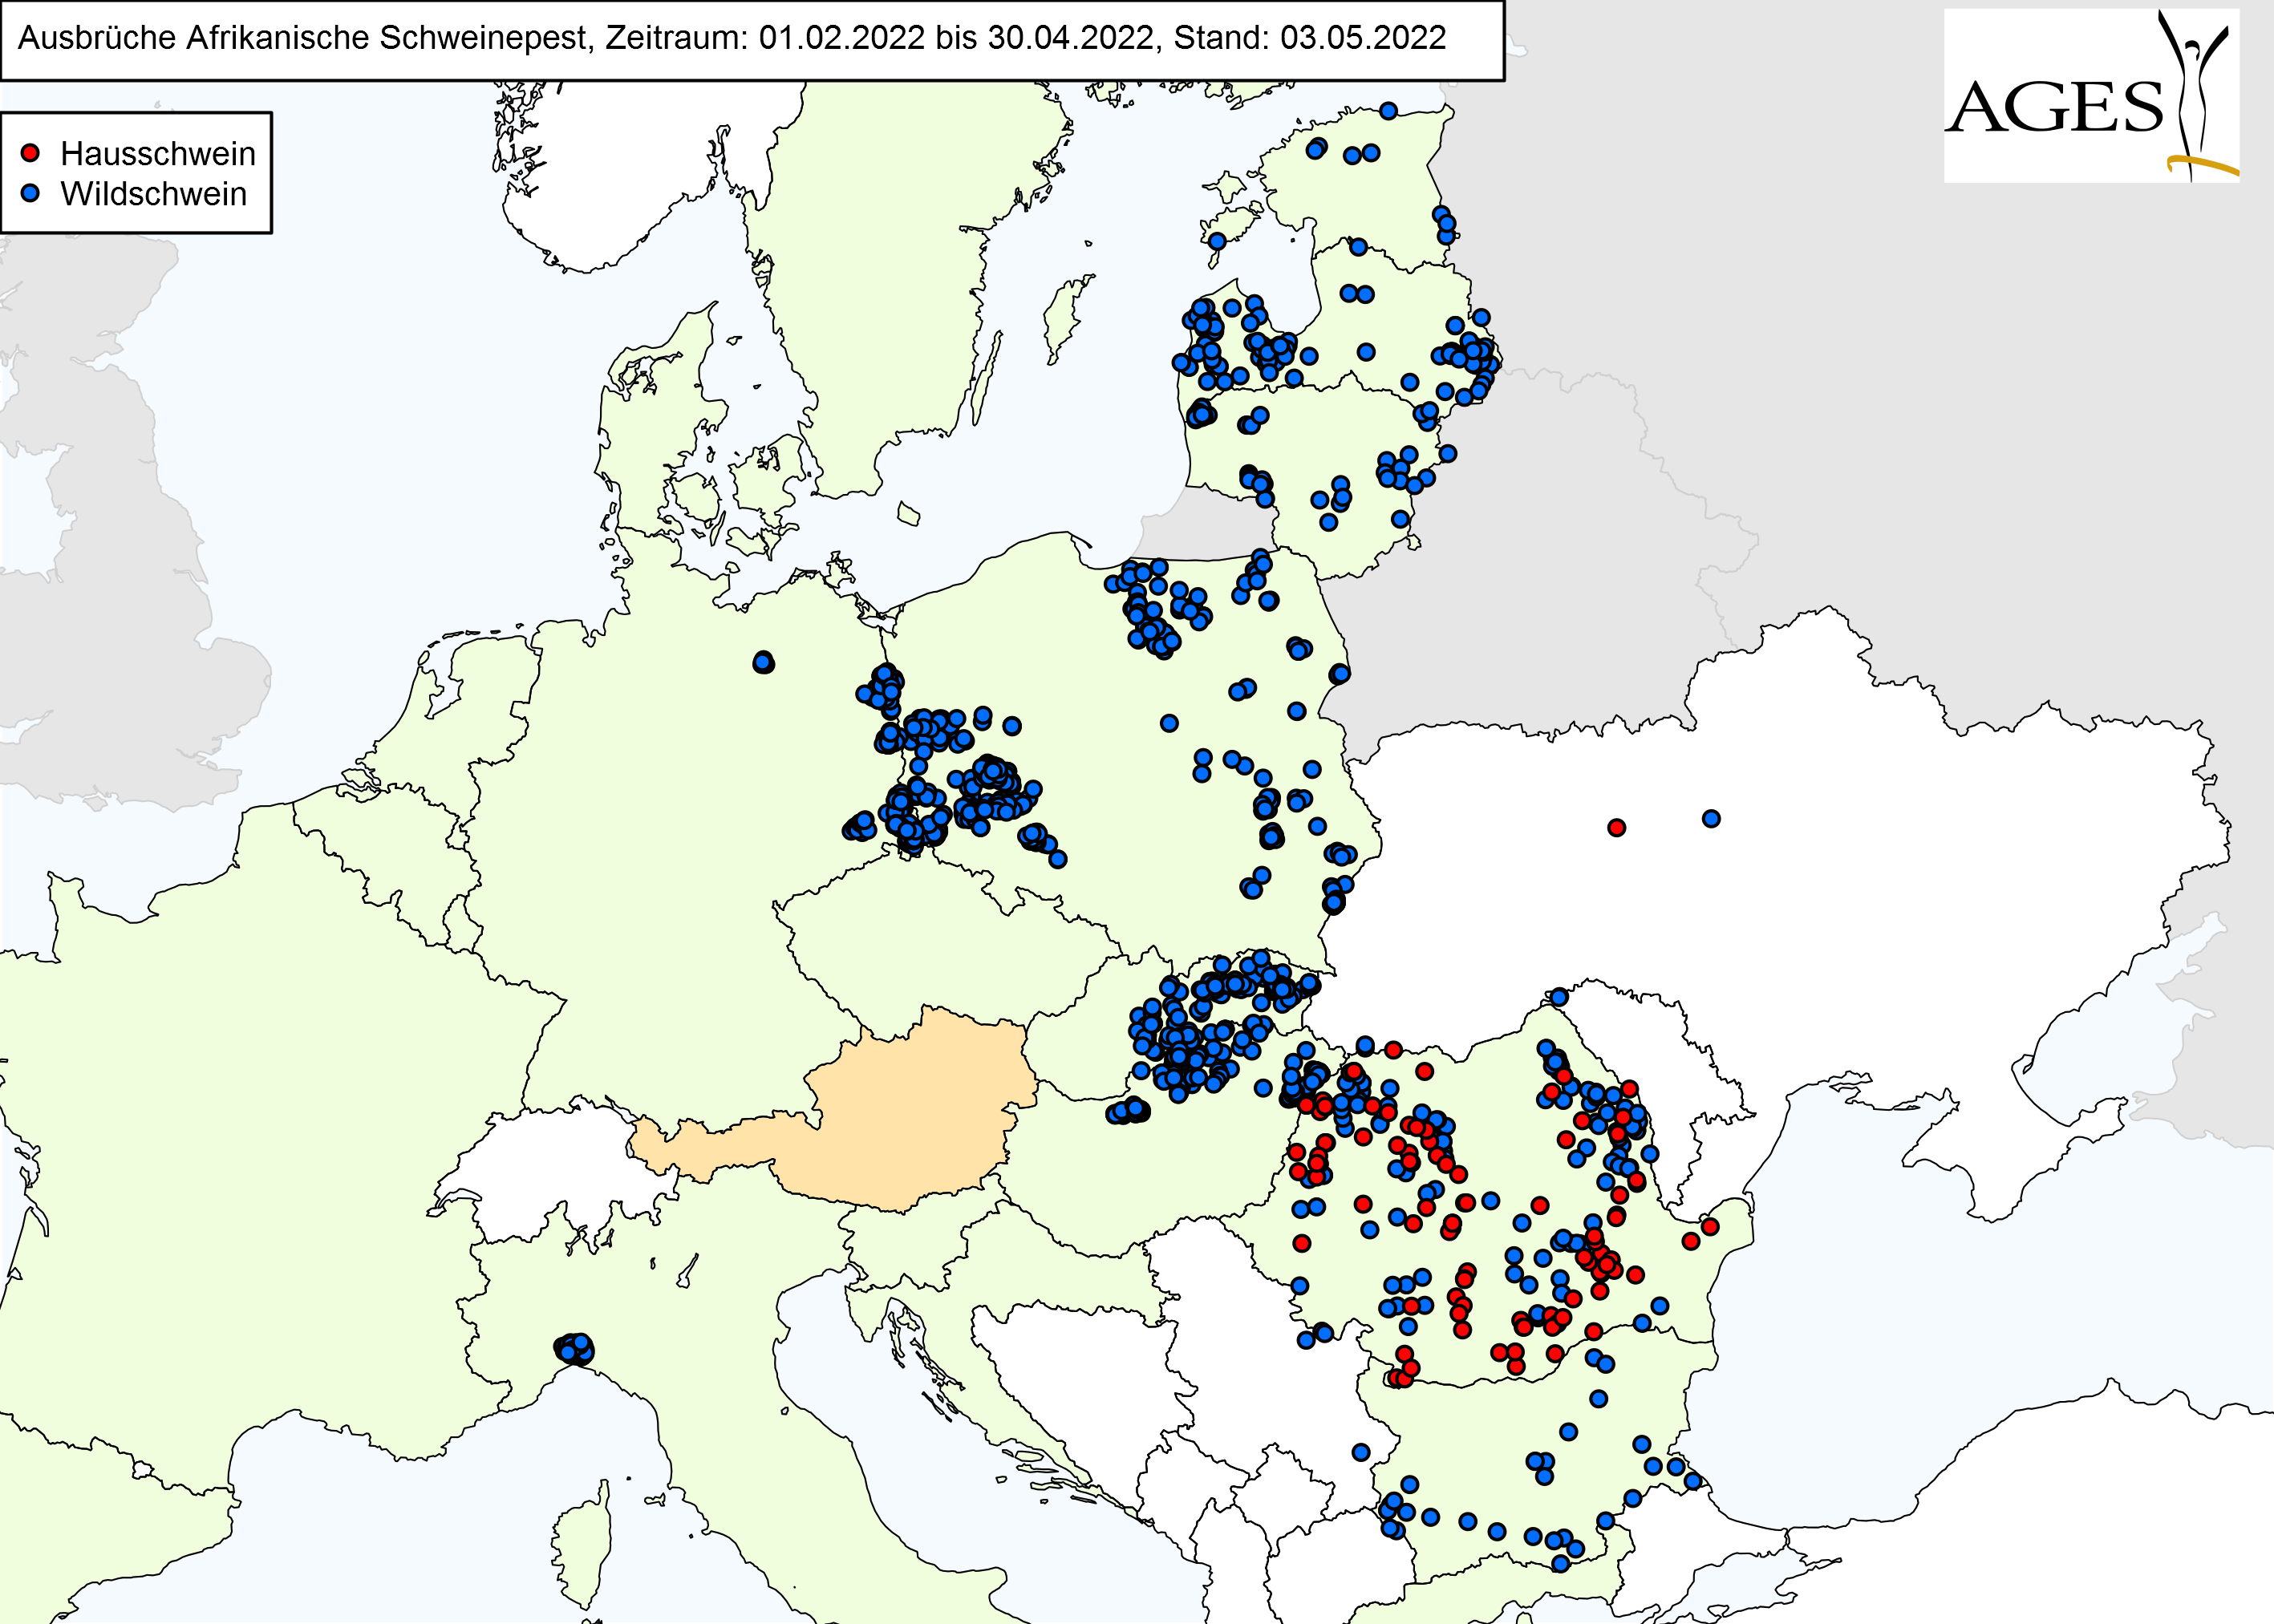 Europakarte zu ASP-Fällen wie in "Situation in Europa" beschrieben.